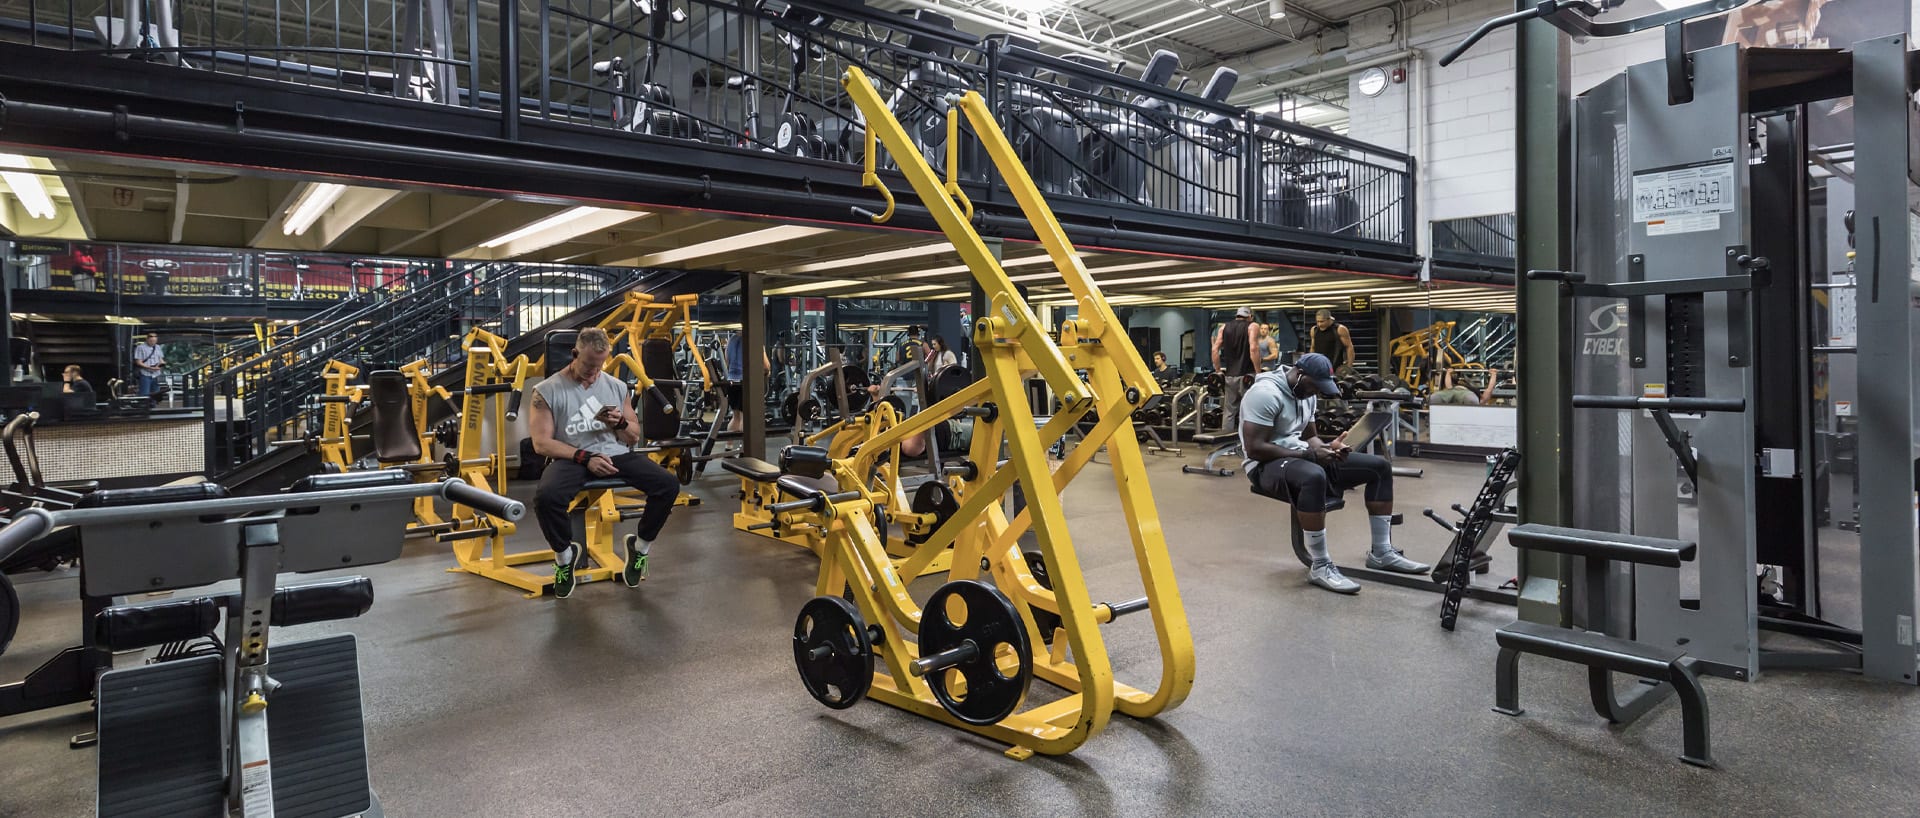 Best Gyms in Richmond VA | Gold's Gym